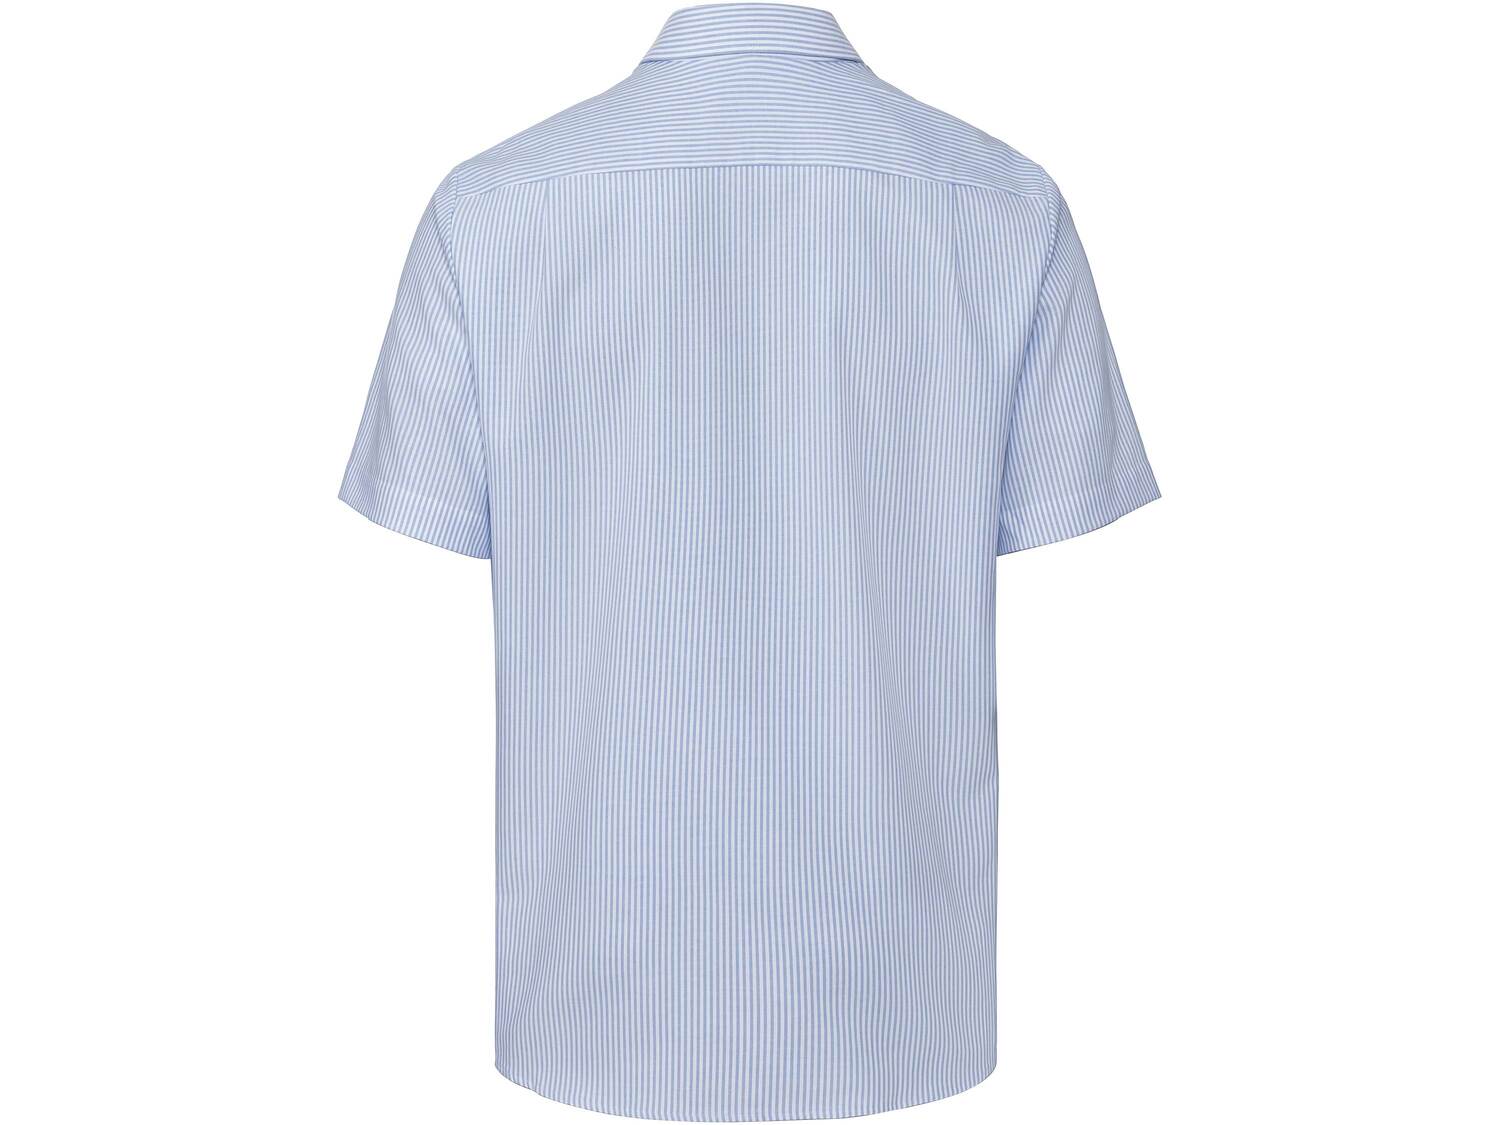 Koszula męska z krótkim rękawem , cena 44,99 PLN 
- 100% bawełny
- prosty, ...